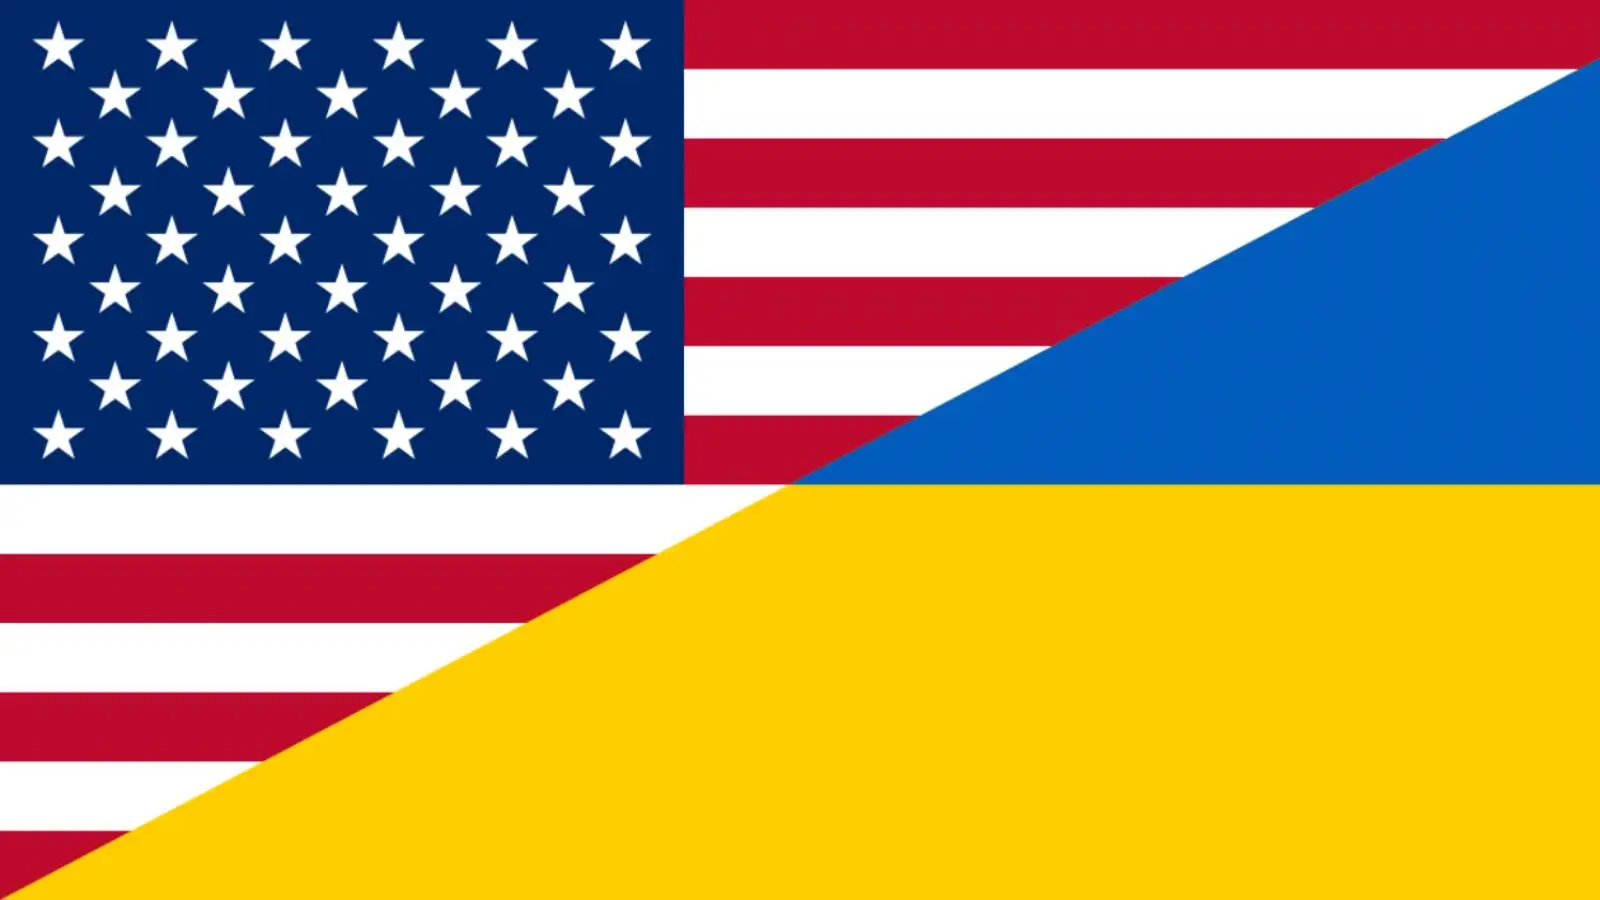 Les États-Unis allouent une nouvelle somme énorme à la guerre en Ukraine